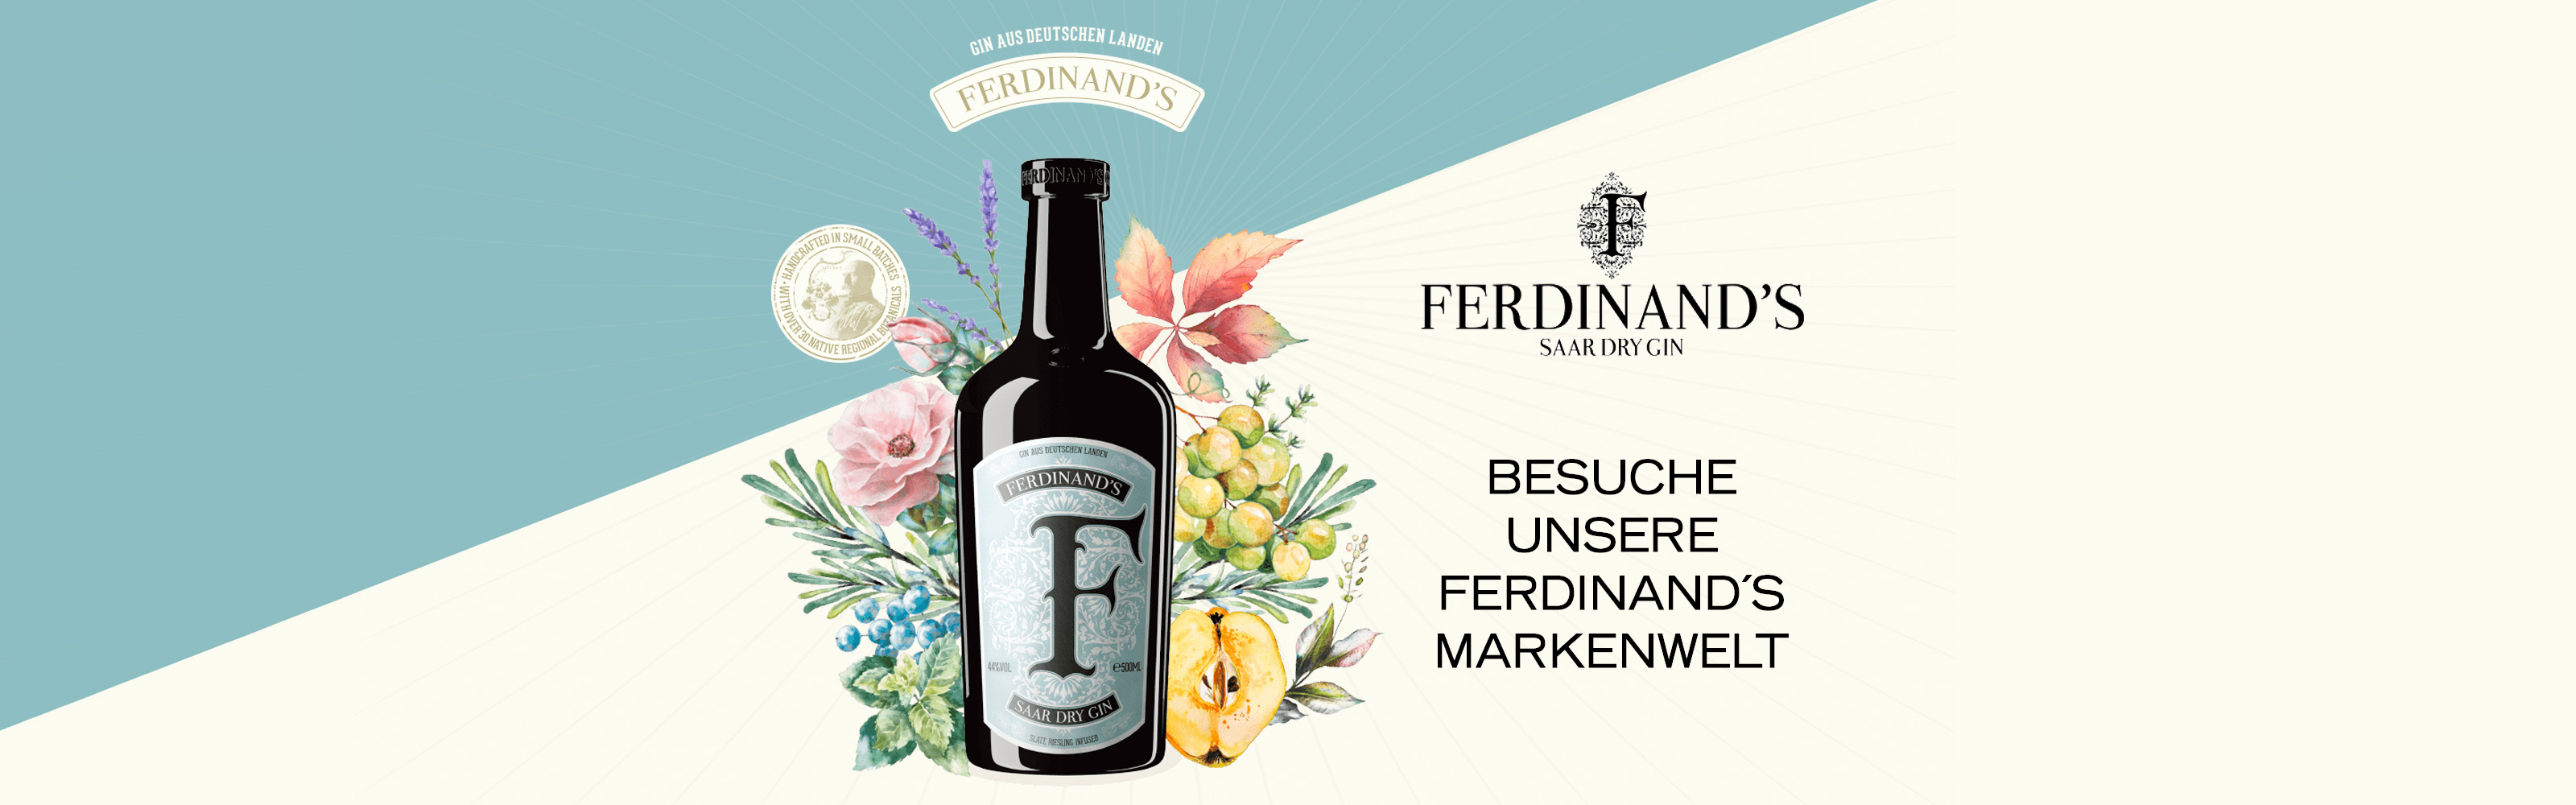 Zur Markenwelt von Ferdinand's